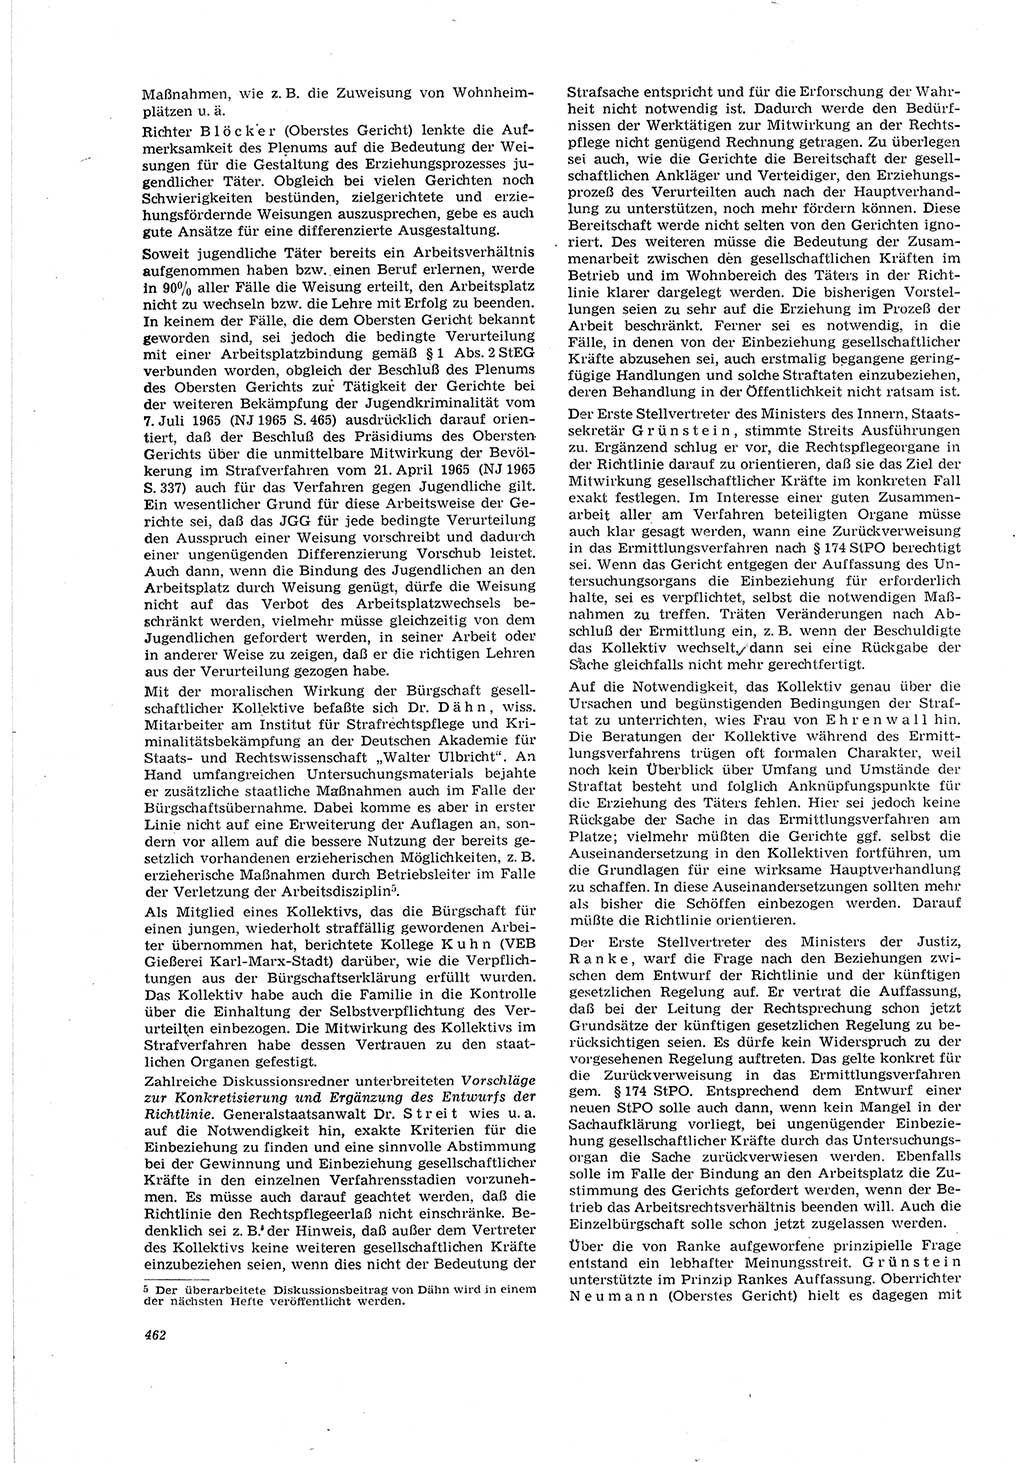 Neue Justiz (NJ), Zeitschrift für Recht und Rechtswissenschaft [Deutsche Demokratische Republik (DDR)], 20. Jahrgang 1966, Seite 462 (NJ DDR 1966, S. 462)